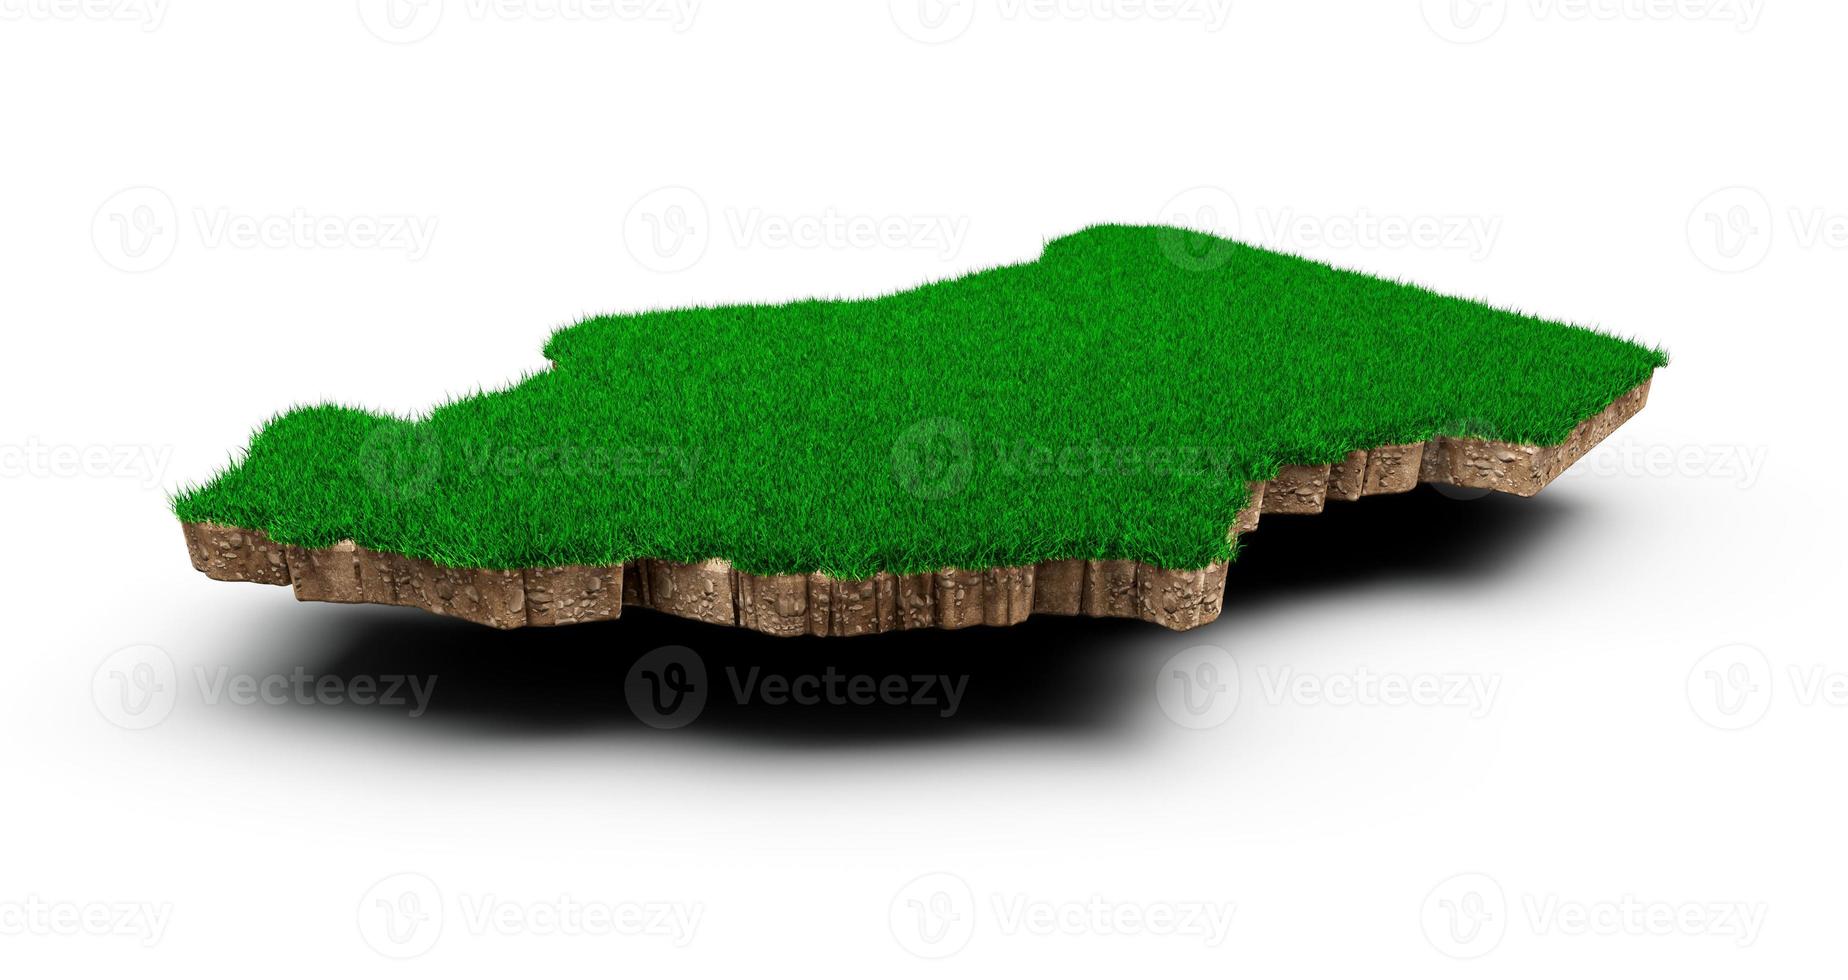 chad mapa suelo tierra geología sección transversal con hierba verde y roca suelo textura 3d ilustración foto